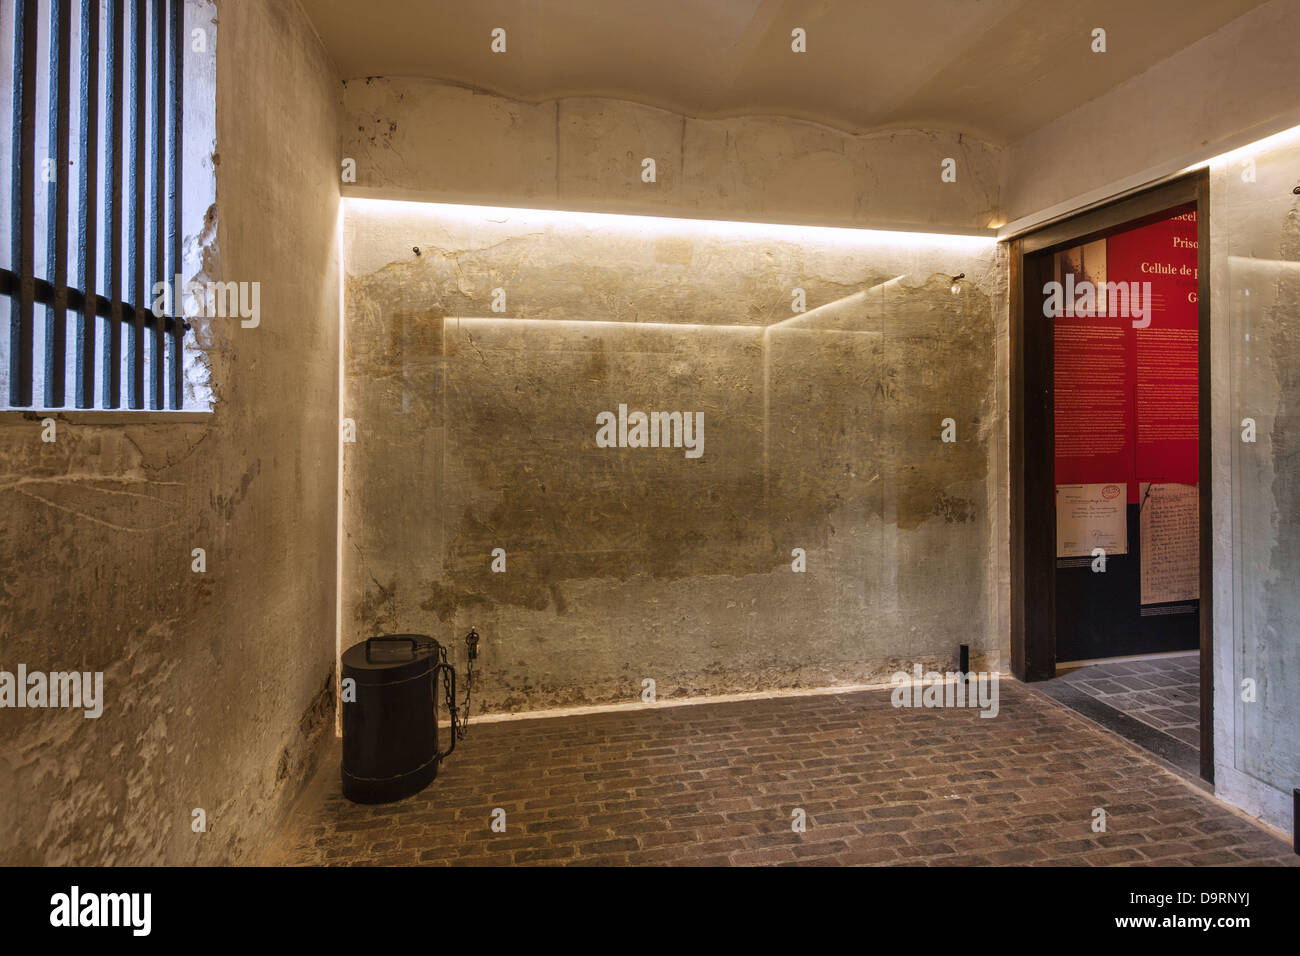 Mur de la première guerre mondiale première guerre mondiale les inscriptions de l'un des soldats condamnés à mort de cellule à l'hôtel de ville de Poperinge, Flandre occidentale, Belgique Banque D'Images